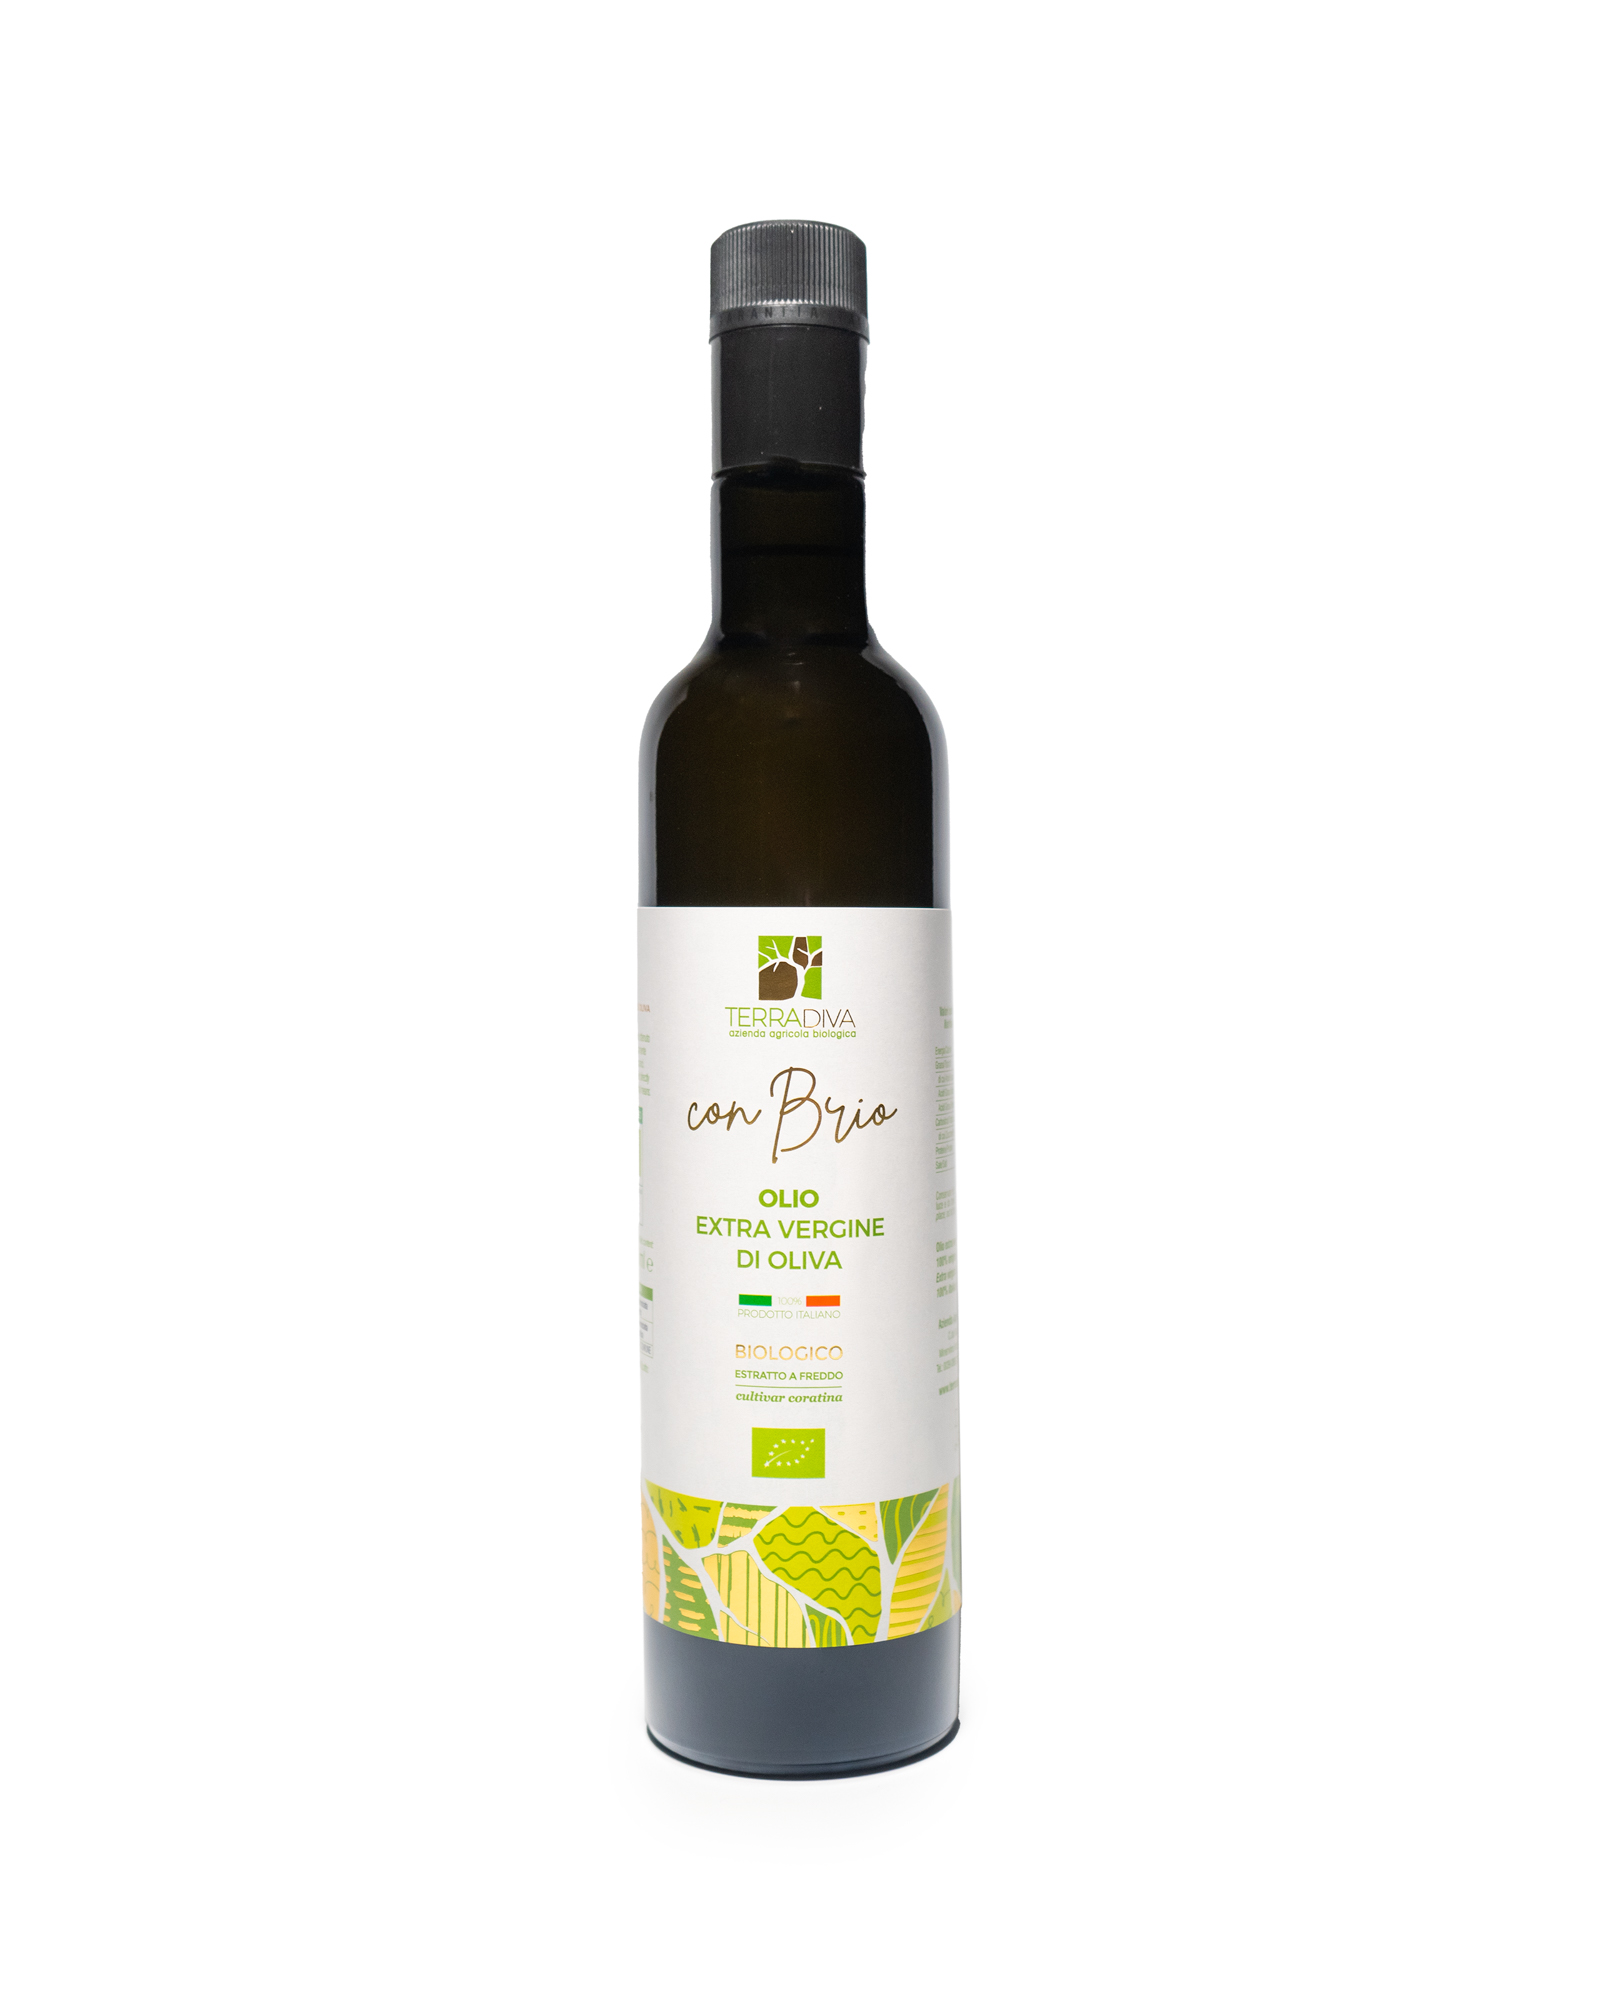 CON BRIO huile d'olive extra vierge bio, filtrée, bouteille de 500 ml.